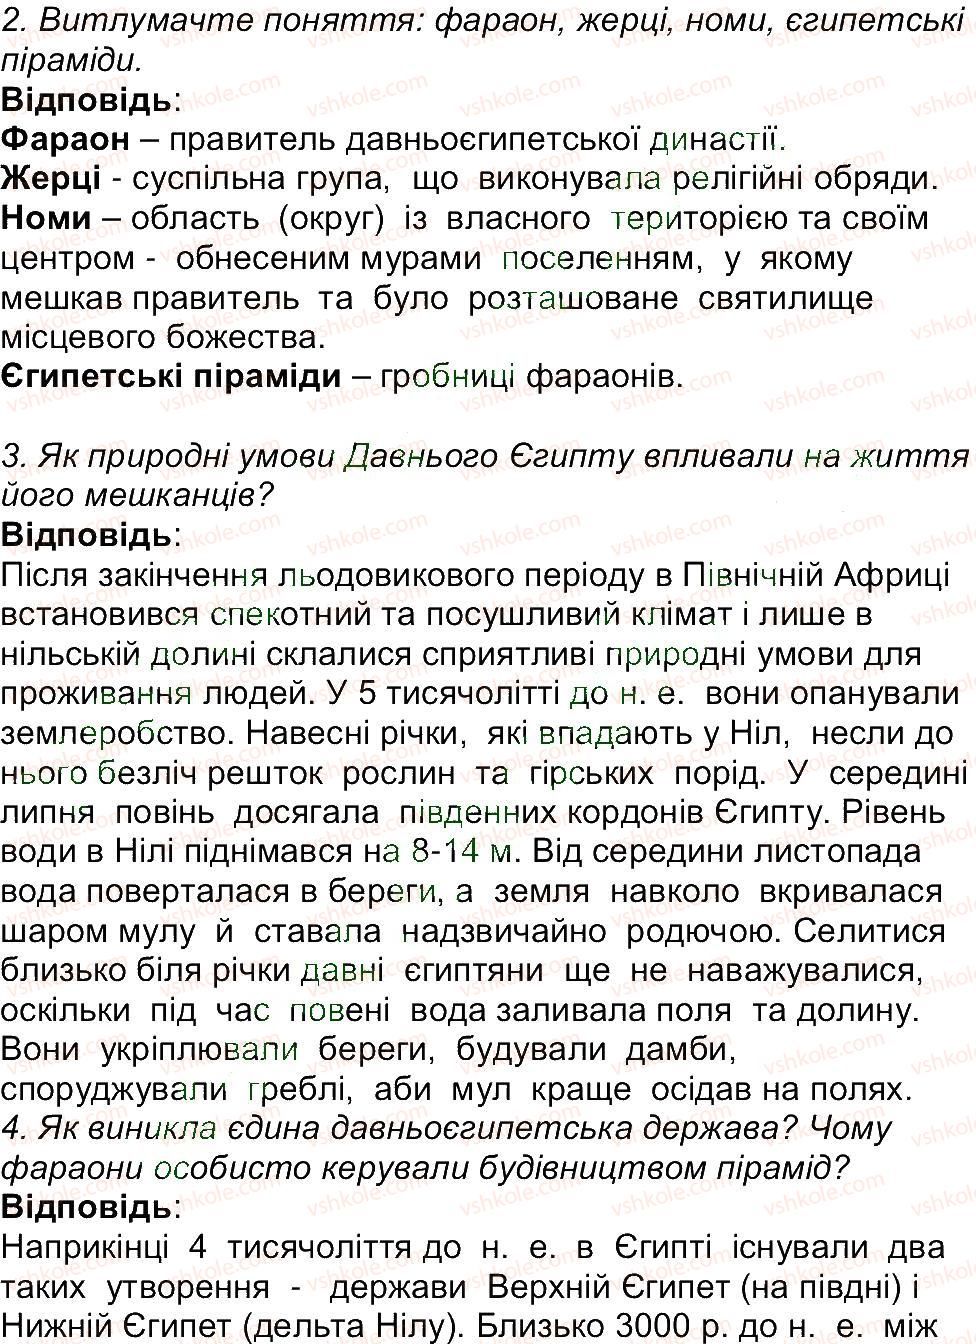 6-istoriya-og-bandrovskij-vs-vlasov-2014--storinki-9-70-53.jpg